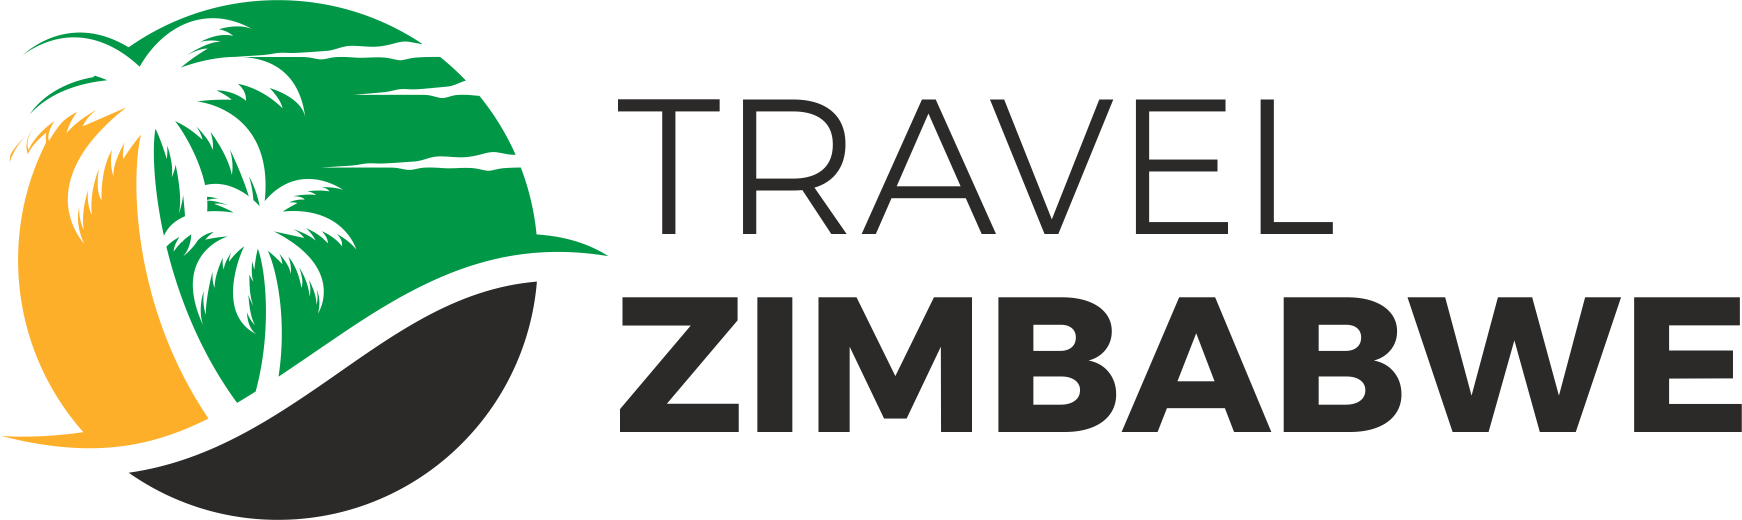 travel agency association zimbabwe